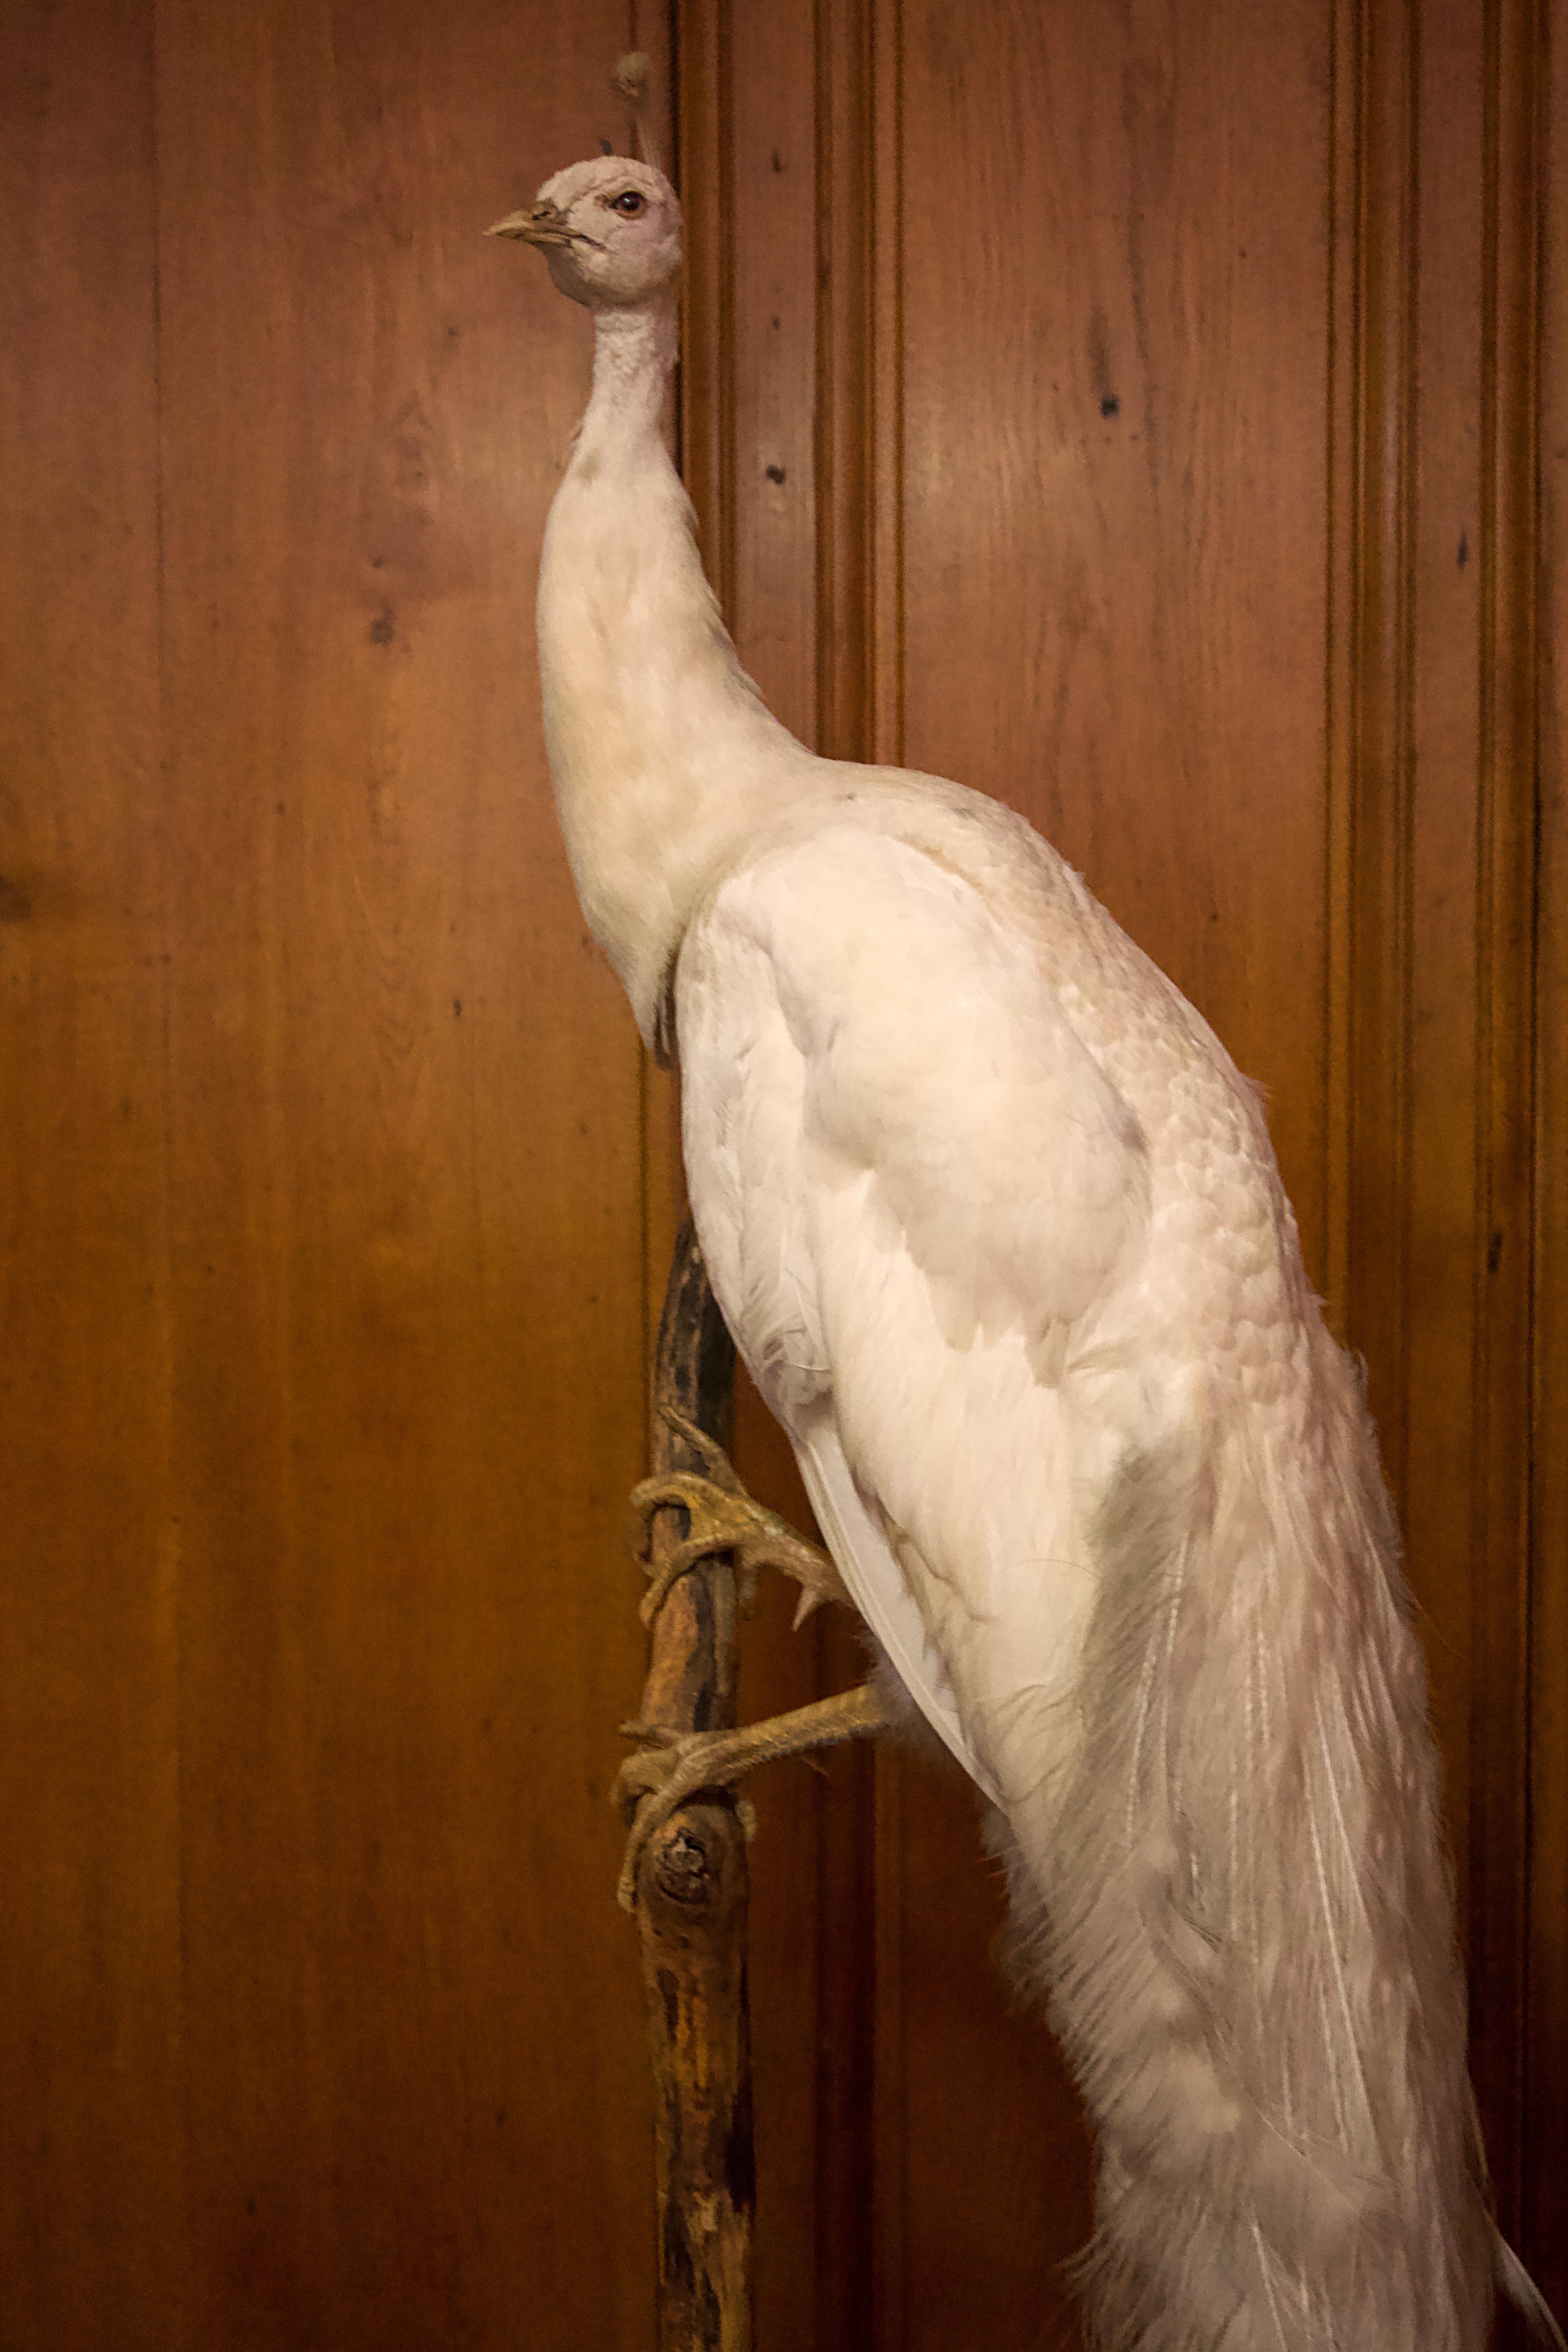 Albino Peacock, stuffed and mounted.